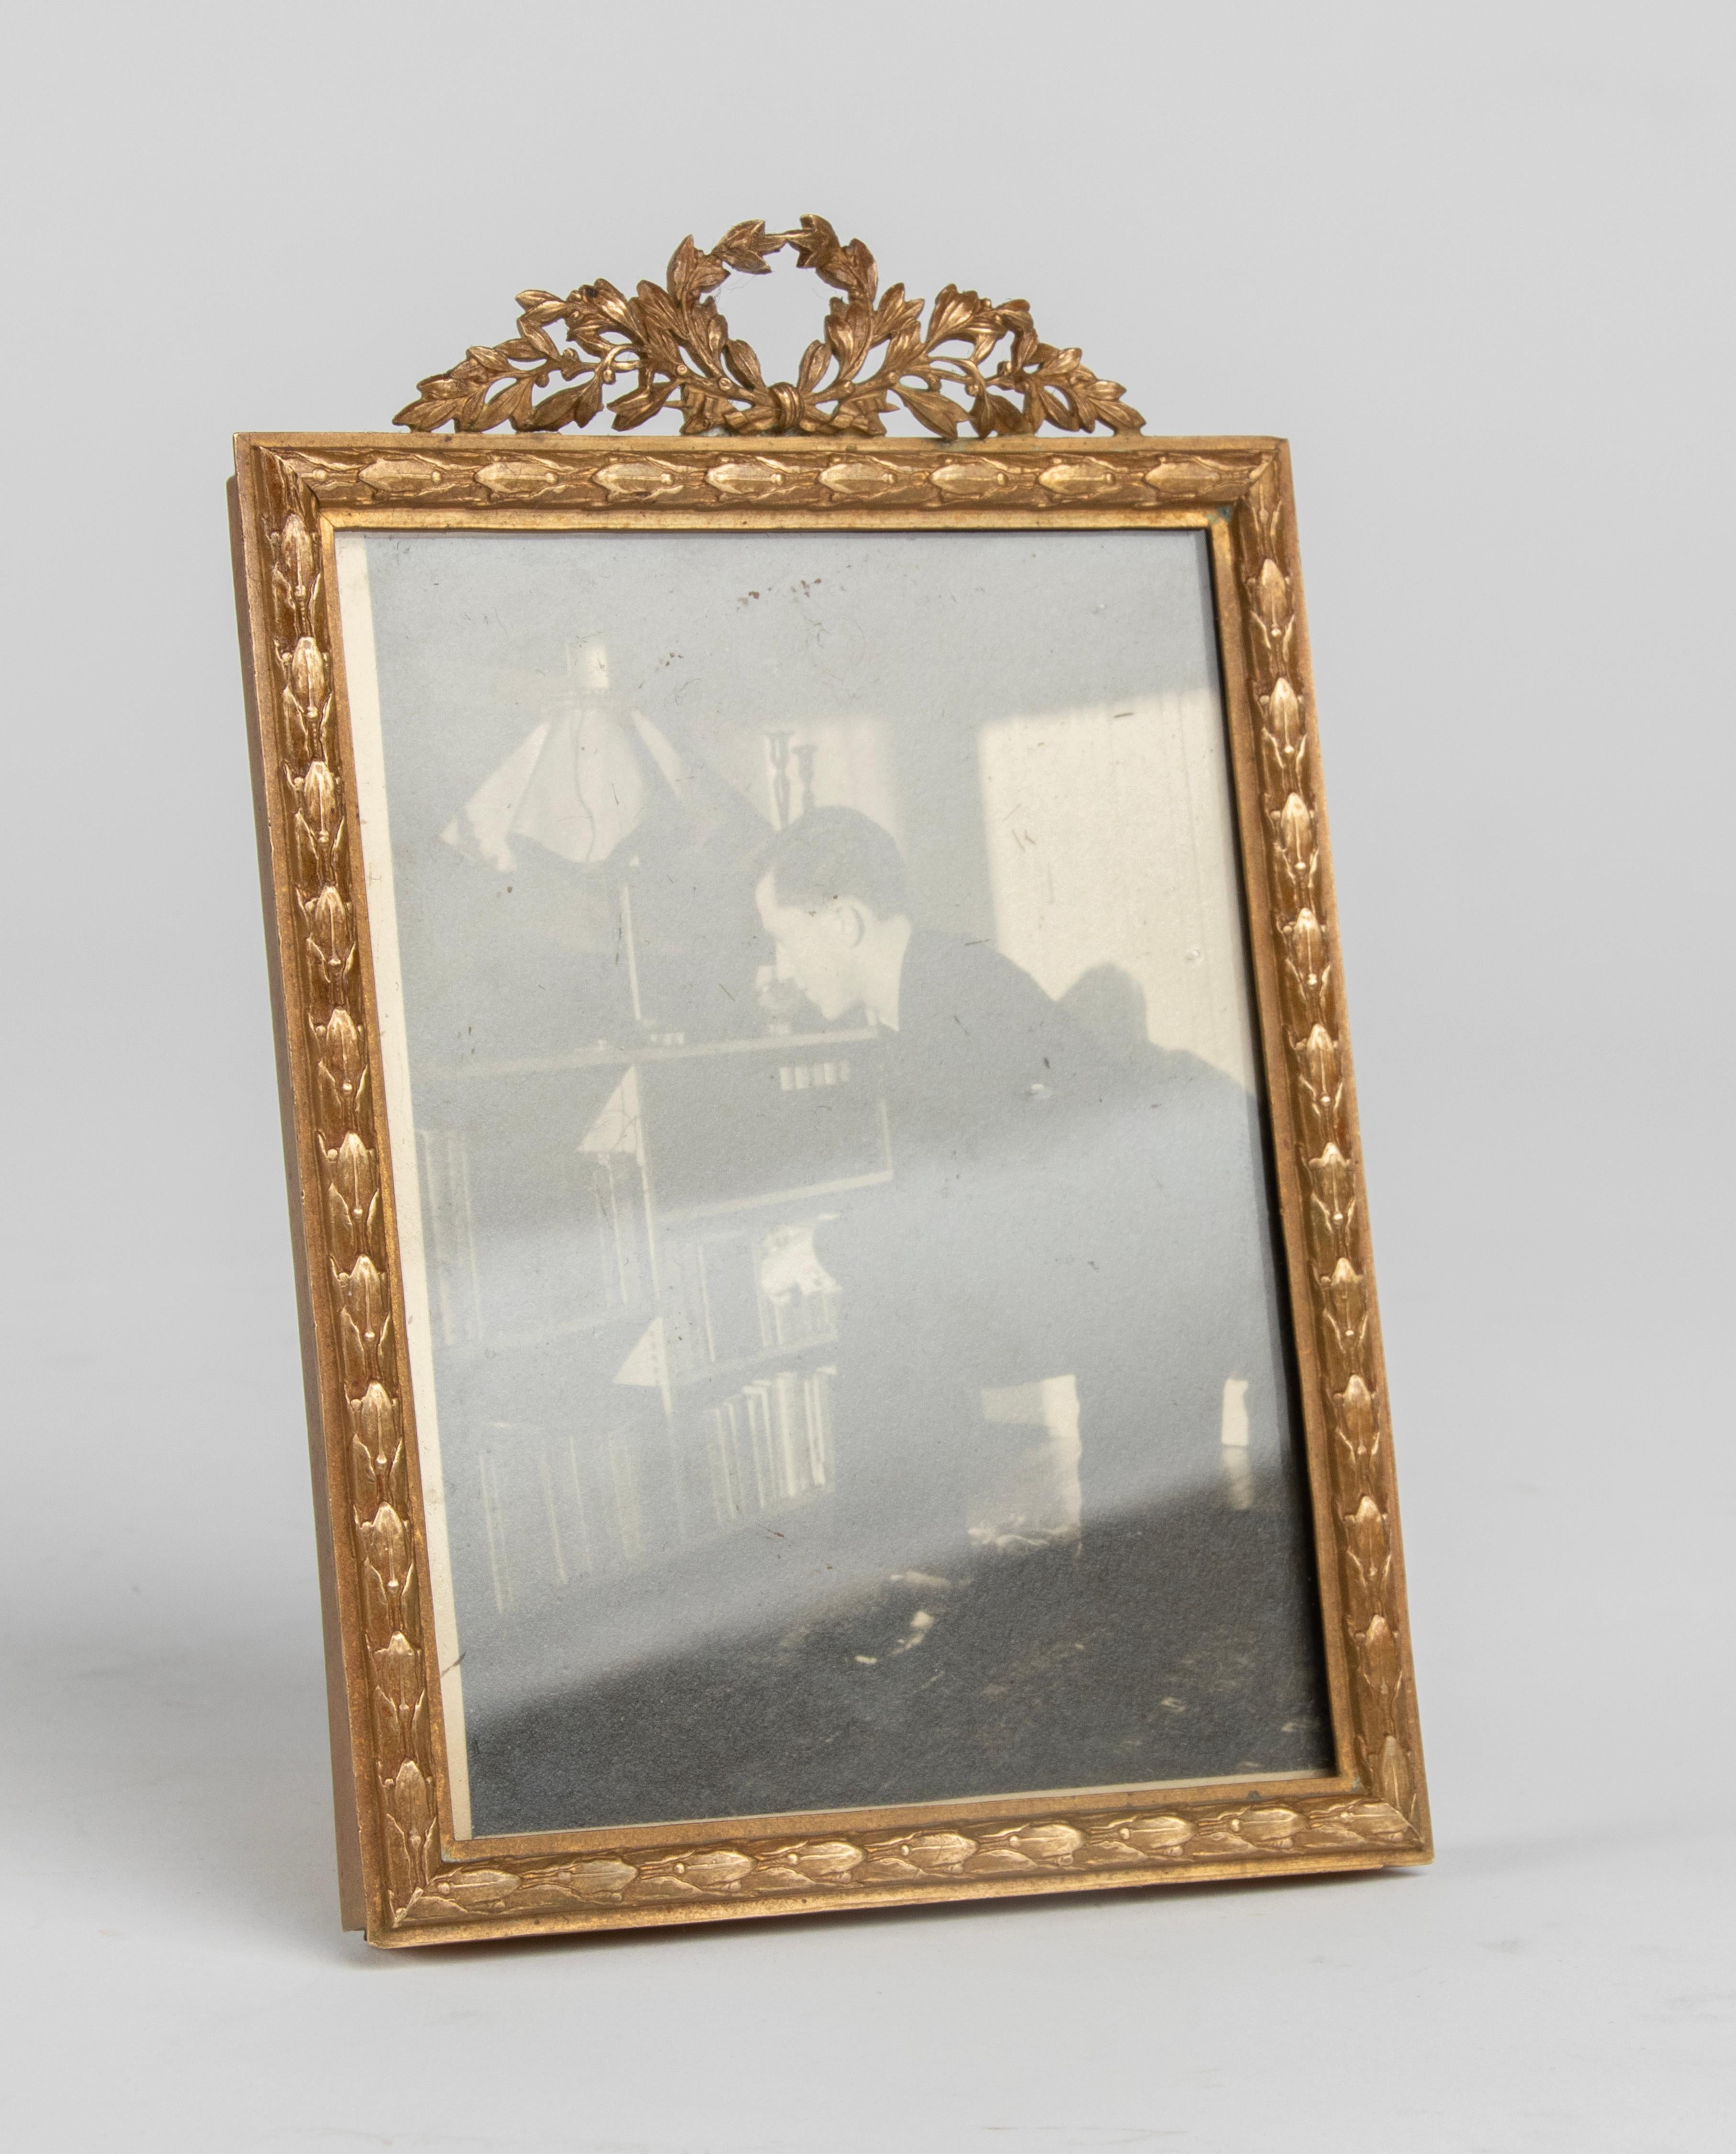 Cadre photo antique raffiné, en bronze, de style Louis XVI. En haut, un écusson avec une couronne de laurier. La bordure est décorée de feuilles de laurier. Fabriqué en France vers 1880-1890. A accrocher au mur ou à poser sur une table.

Dimensions